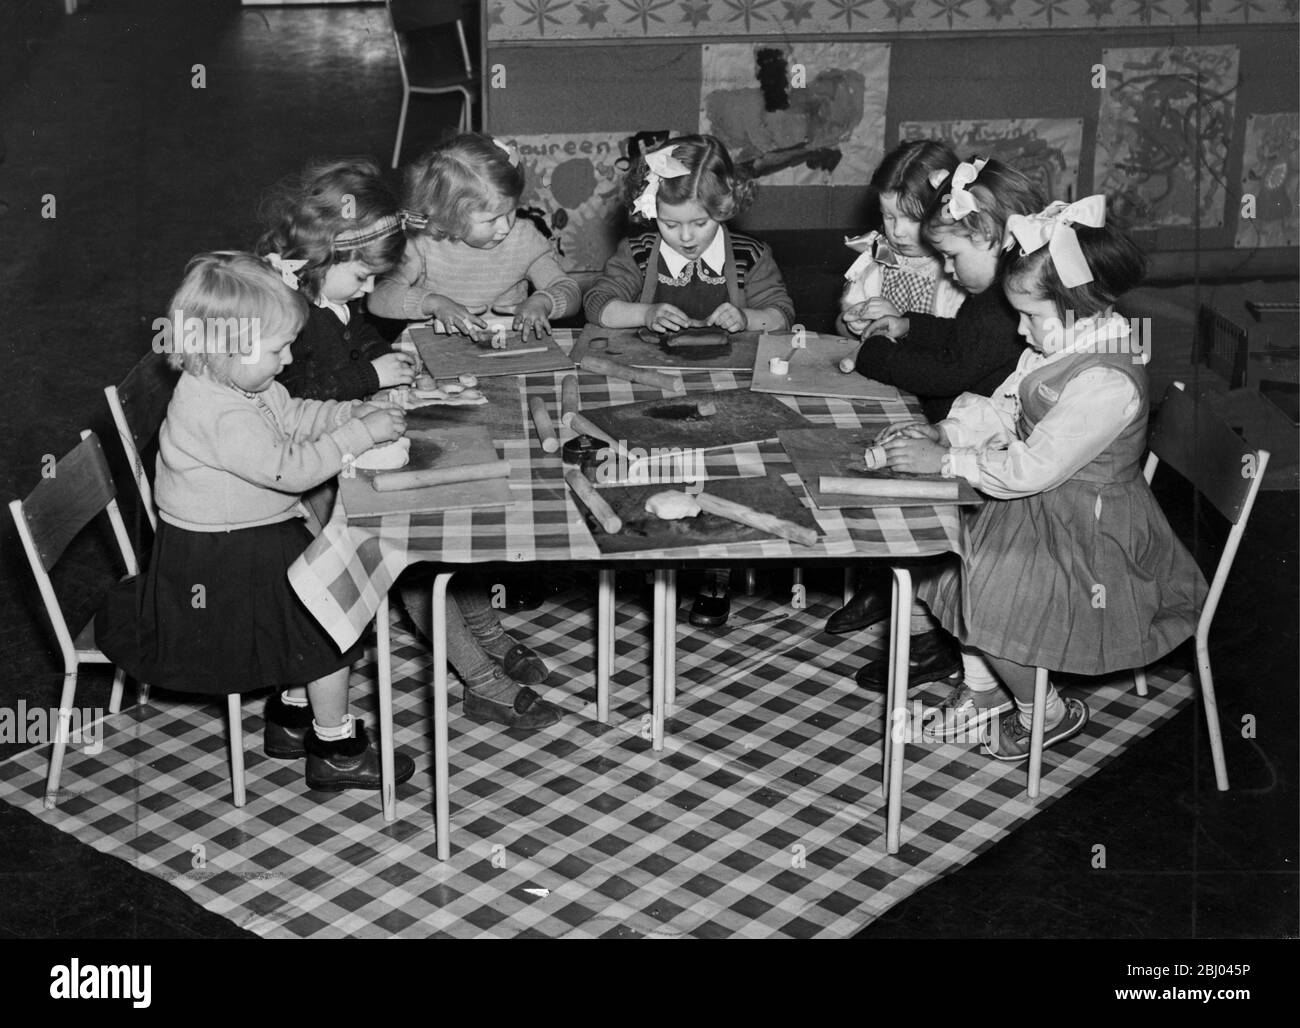 Kinder spielen in der neuen Kinderstube in Ricardo Street in Lansbury Poplar - die Nachbarschaft, die Teil des Festivals von Großbritannien Ausstellung der Architektur bildete. Es bietet Platz für 80 Kinder, kostet £17000 ist luftig bunt und hat alle modernen Annehmlichkeiten - 24. Januar 1952 Stockfoto